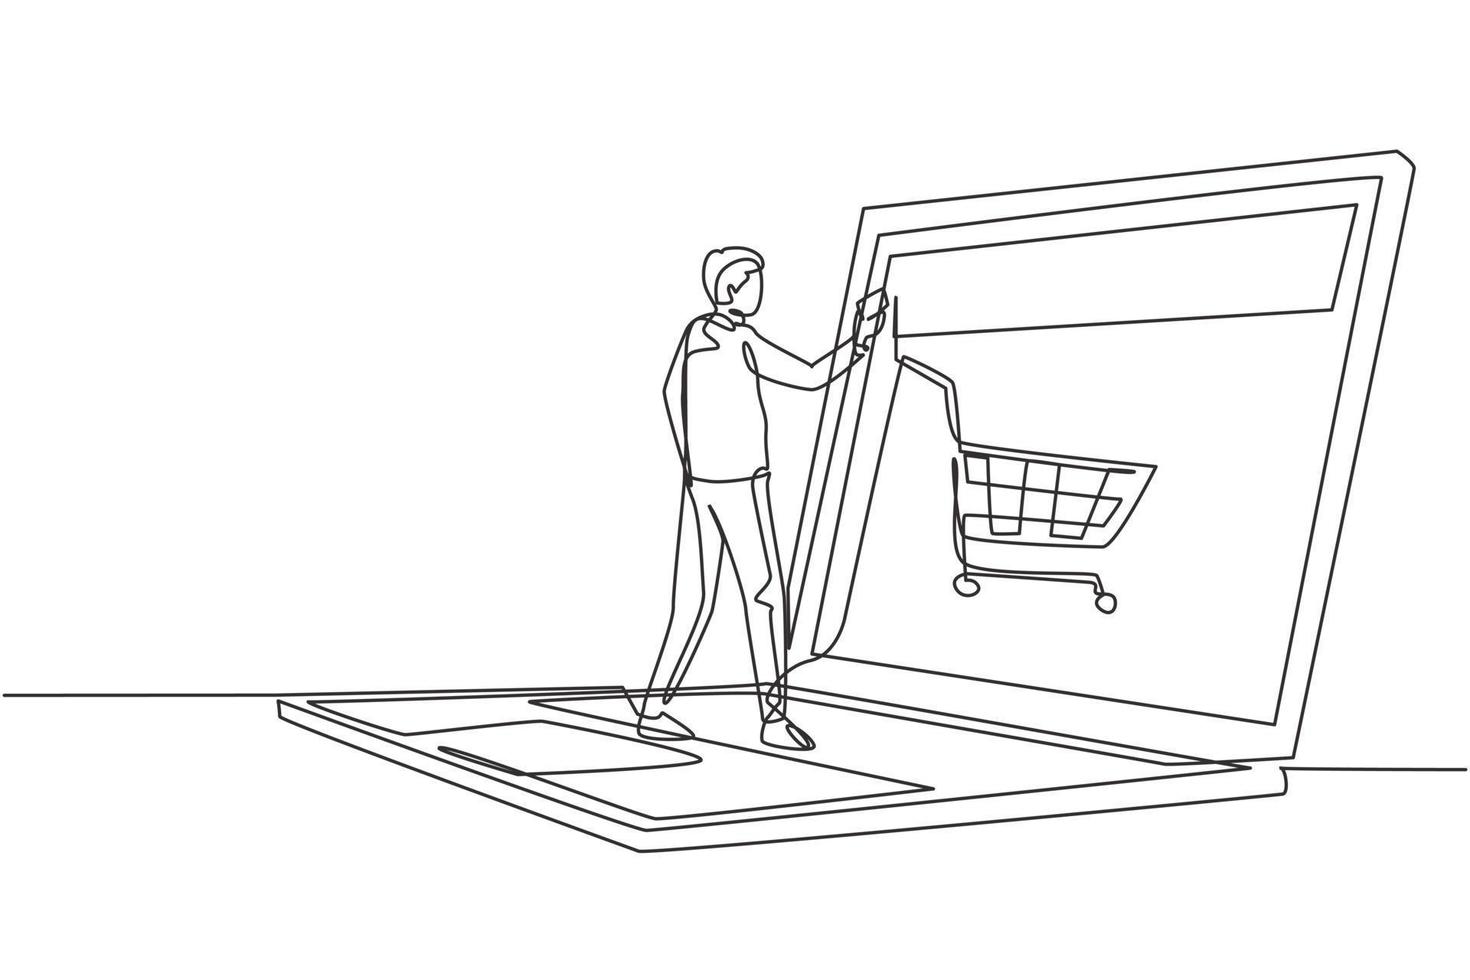 einzelne durchgehende Linie, die junge männliche Online-Shopping über einen riesigen Laptop-Bildschirm mit Einkaufswagen im Inneren zeichnet. Verkauf, digitales Lifestyle-Konzept. dynamische eine linie zeichnen grafikdesign vektorillustration vektor